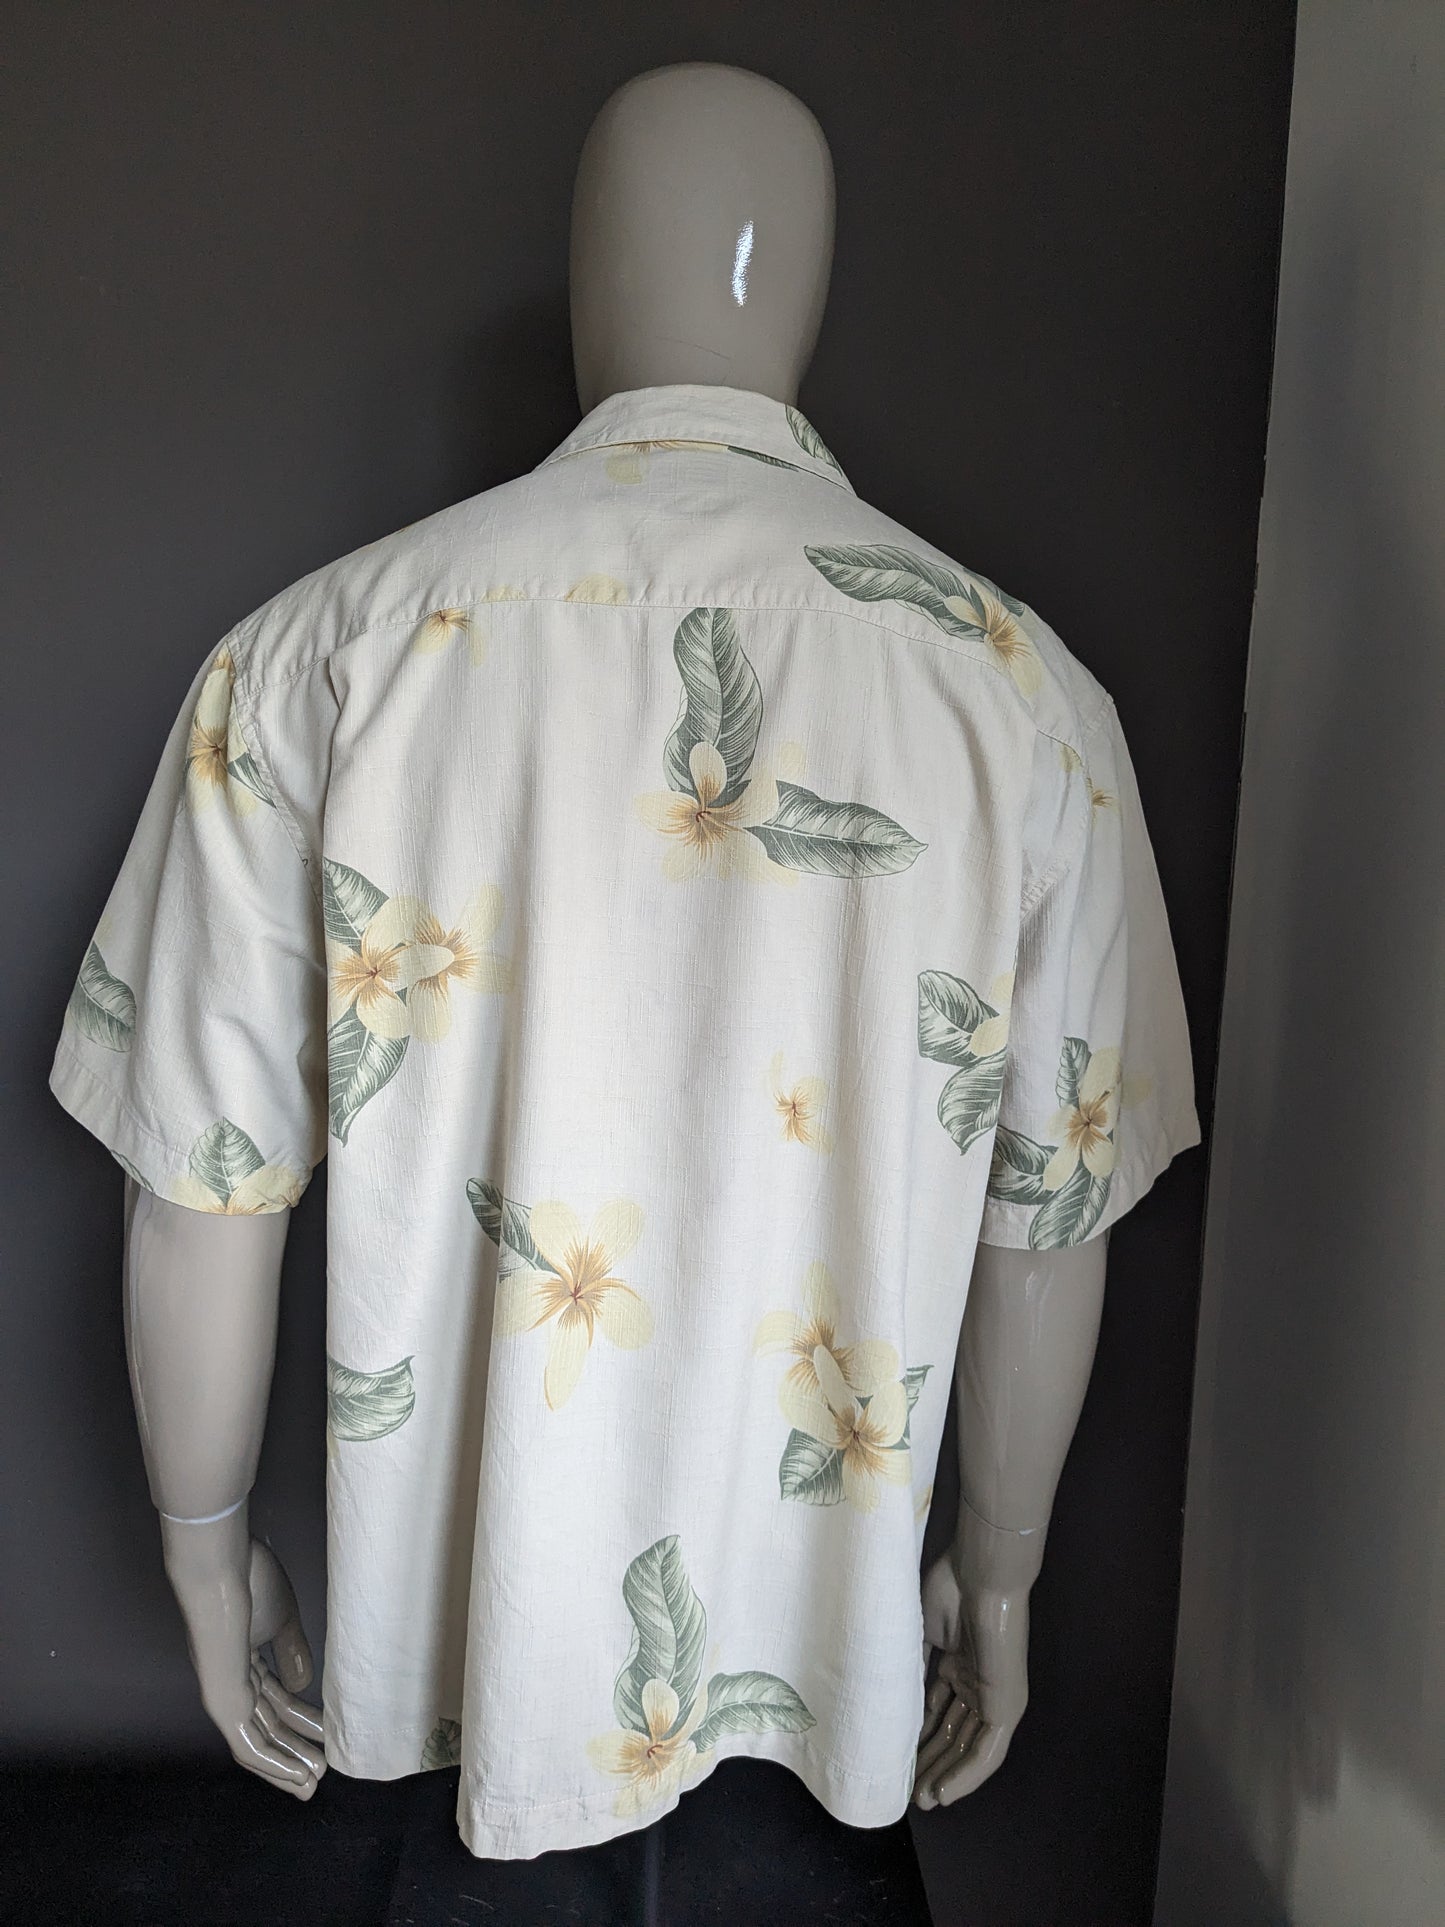 Jamaica Jaxx original Hawaii shirt short sleeve. Silk with beige yellow green flowers print. Size XL.